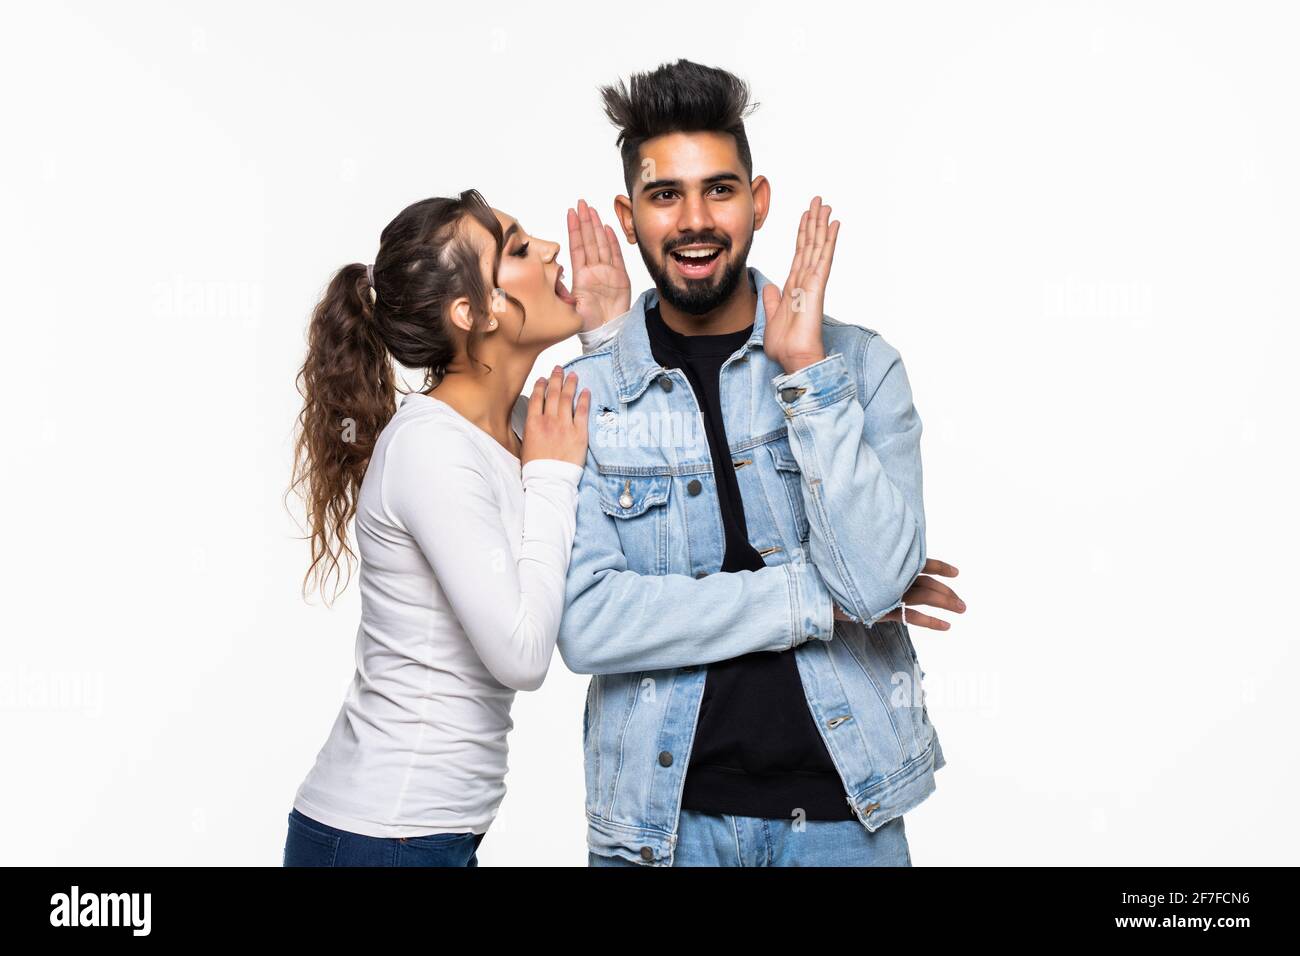 Porträt eines jungen indischen Paares, das Geheimnisse erzählt und zusammen steht Auf weißem Hintergrund Stockfoto